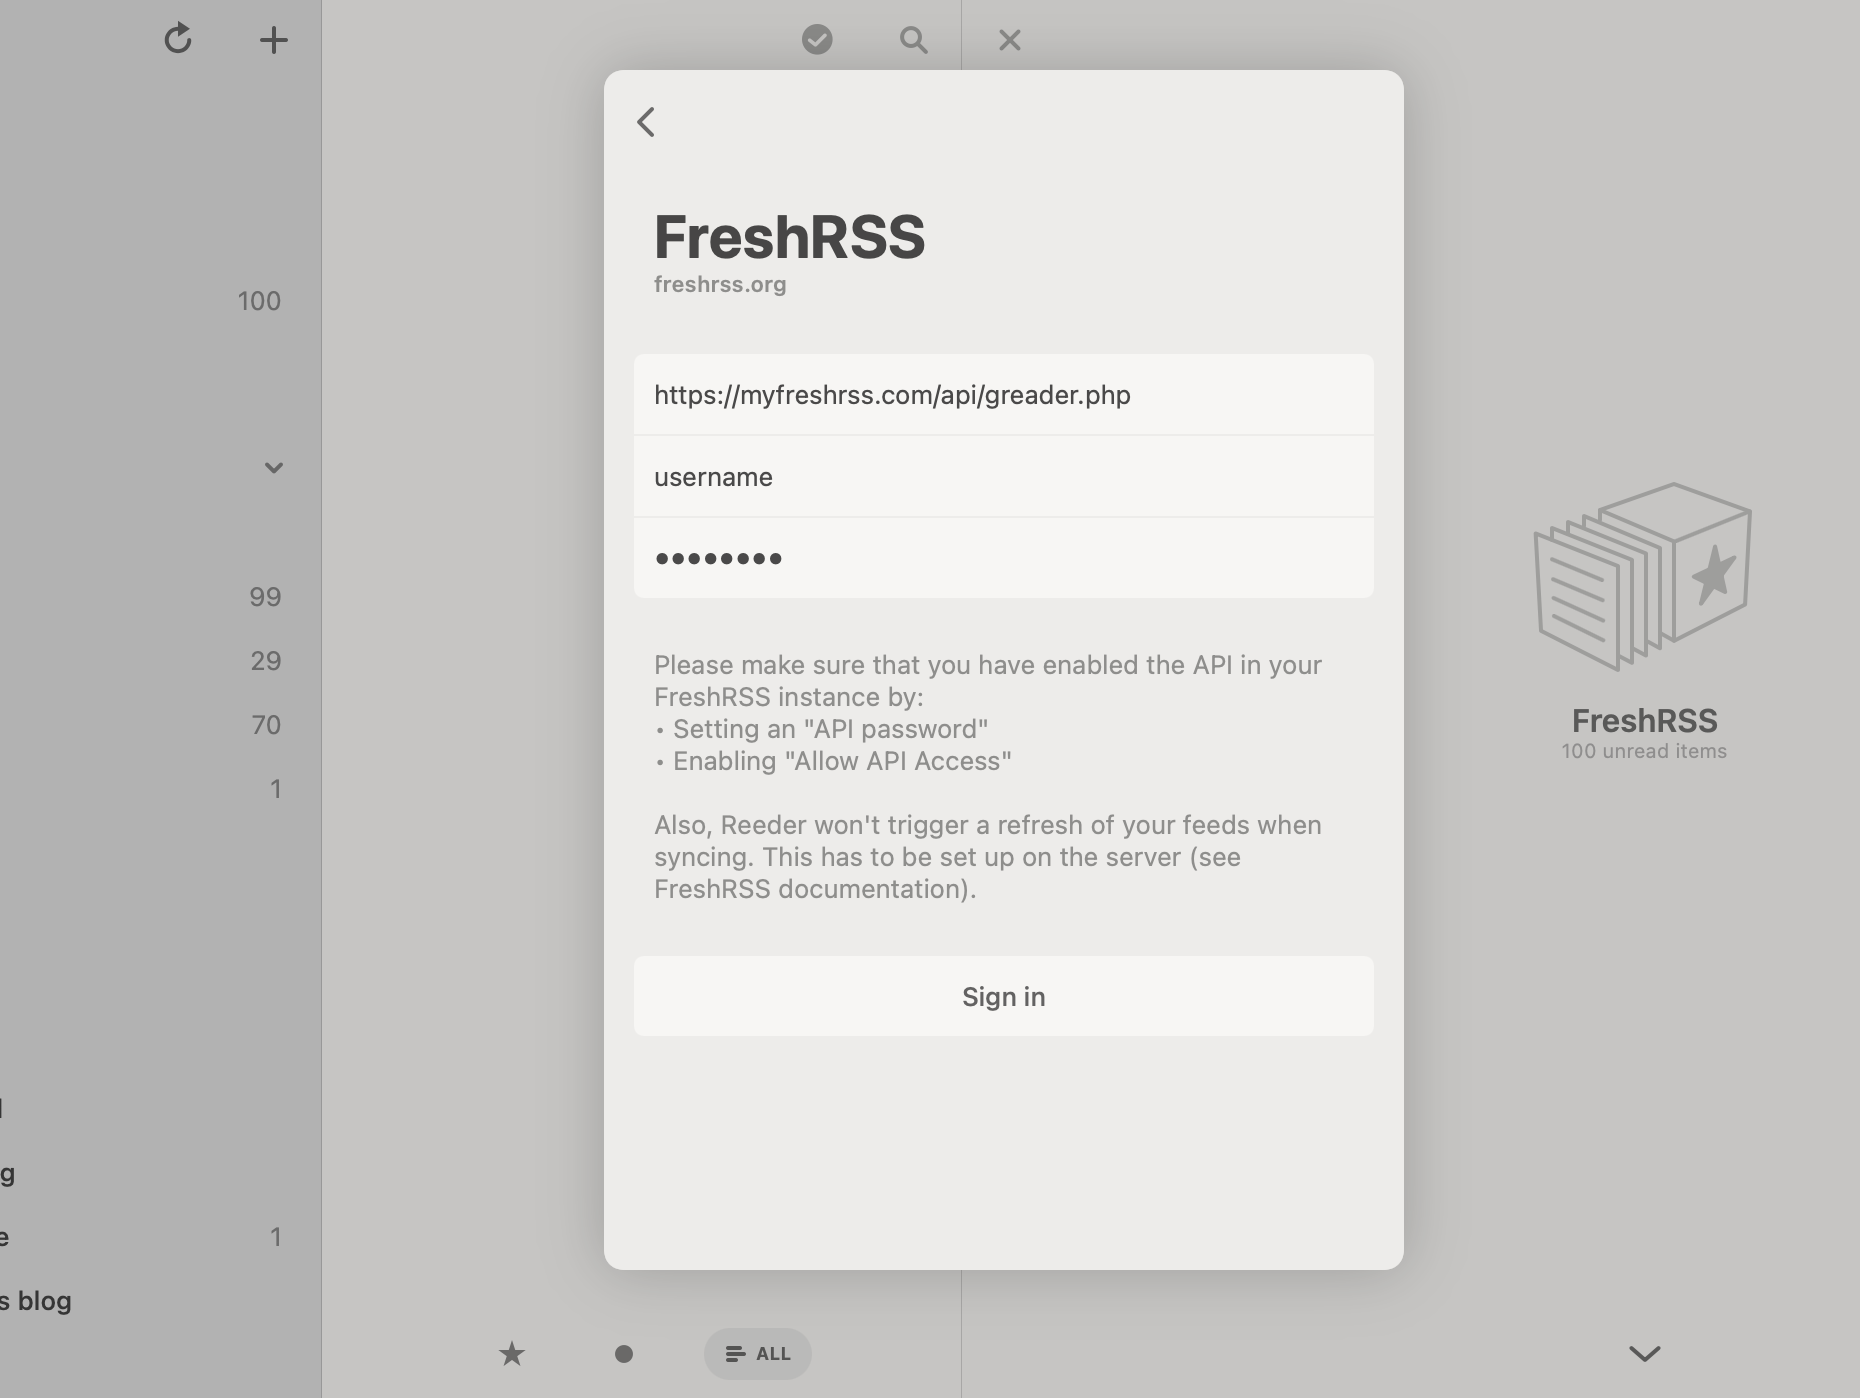 Adding a new FreshRSS server in Reeder